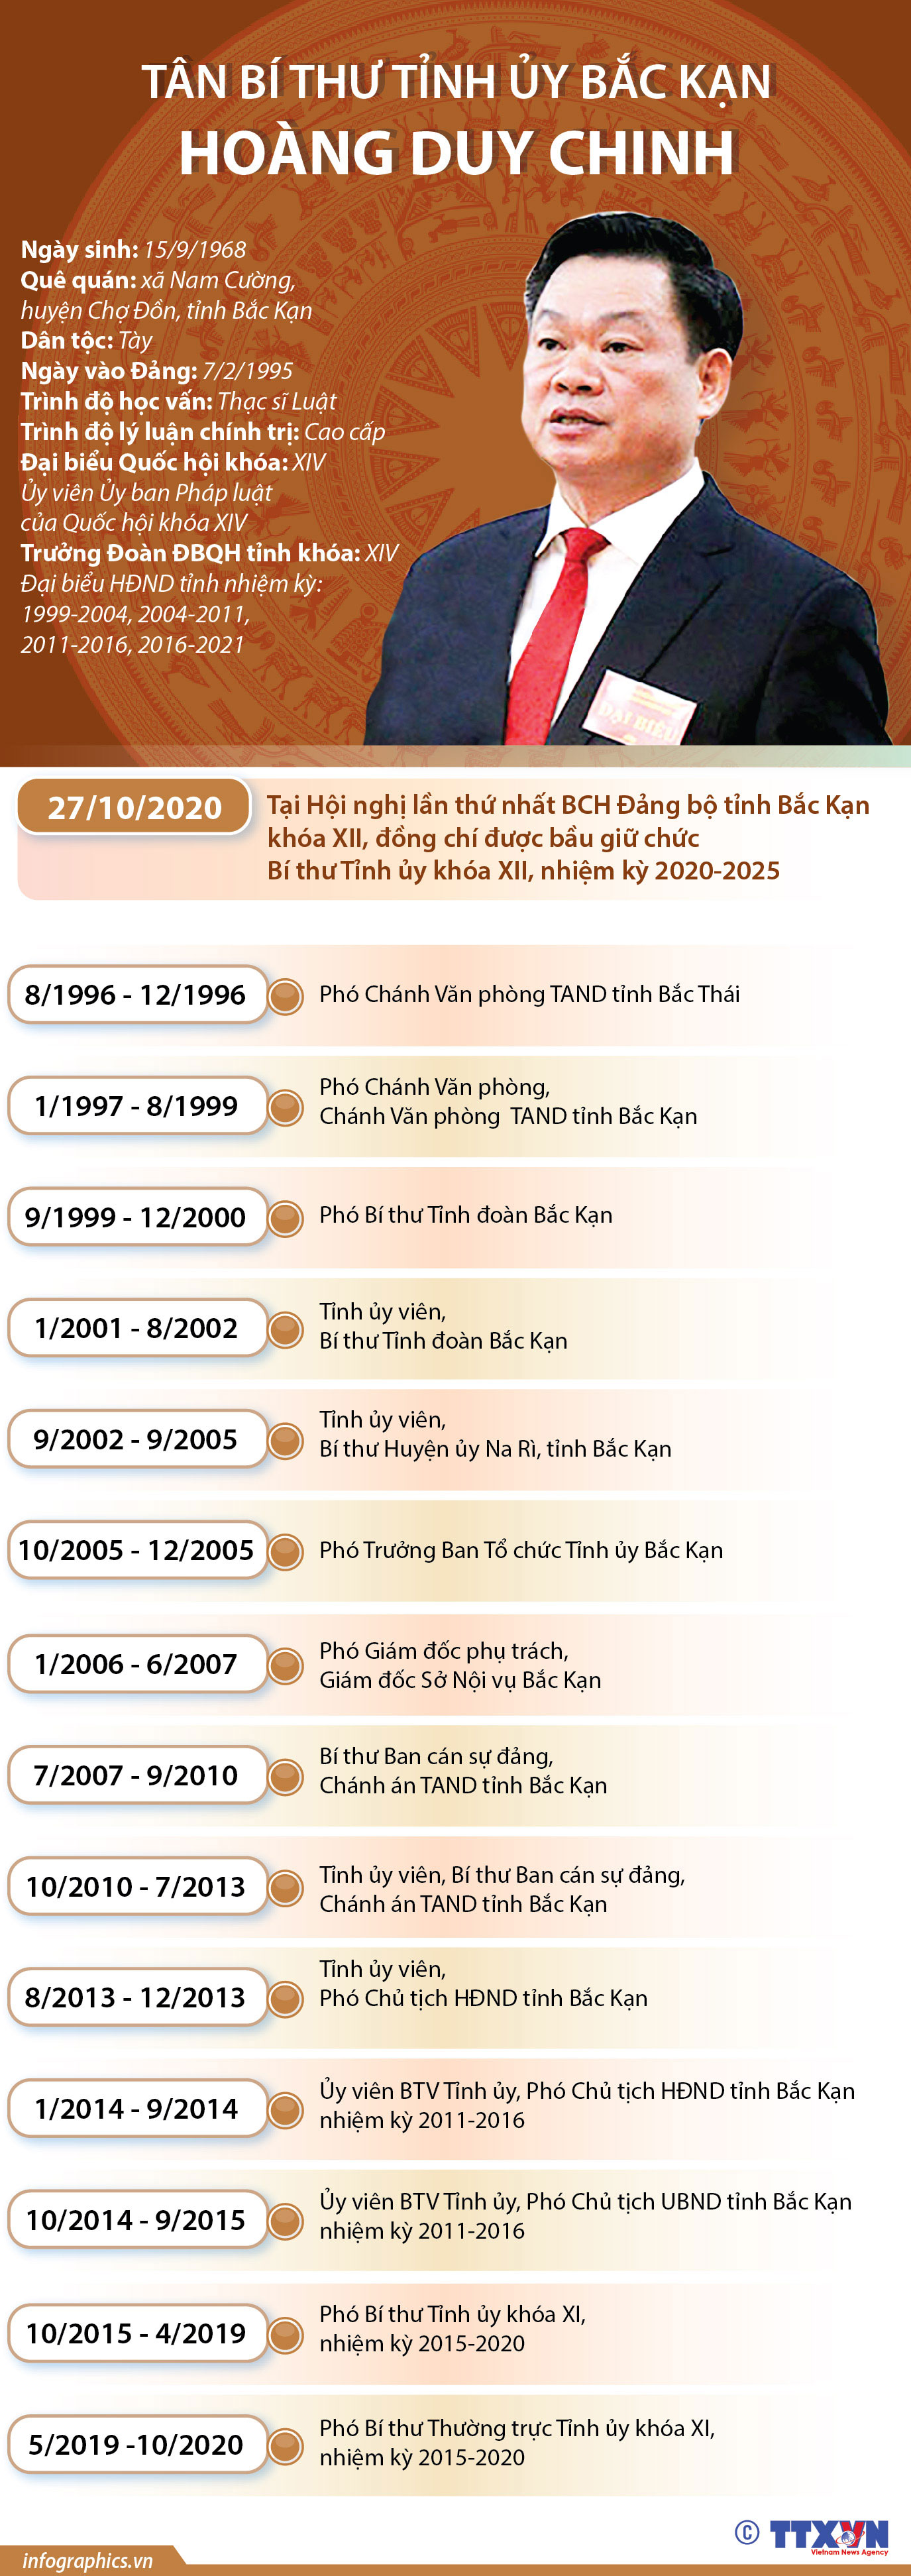 Tại Đại hội đại biểu Đảng bộ khóa XII tỉnh Bắc Kạn nhiệm kỳ 2020-2025, đồng chí Hoàng Duy Chinh đã được bổ nhiệm giữ chức Bí thư Tỉnh ủy